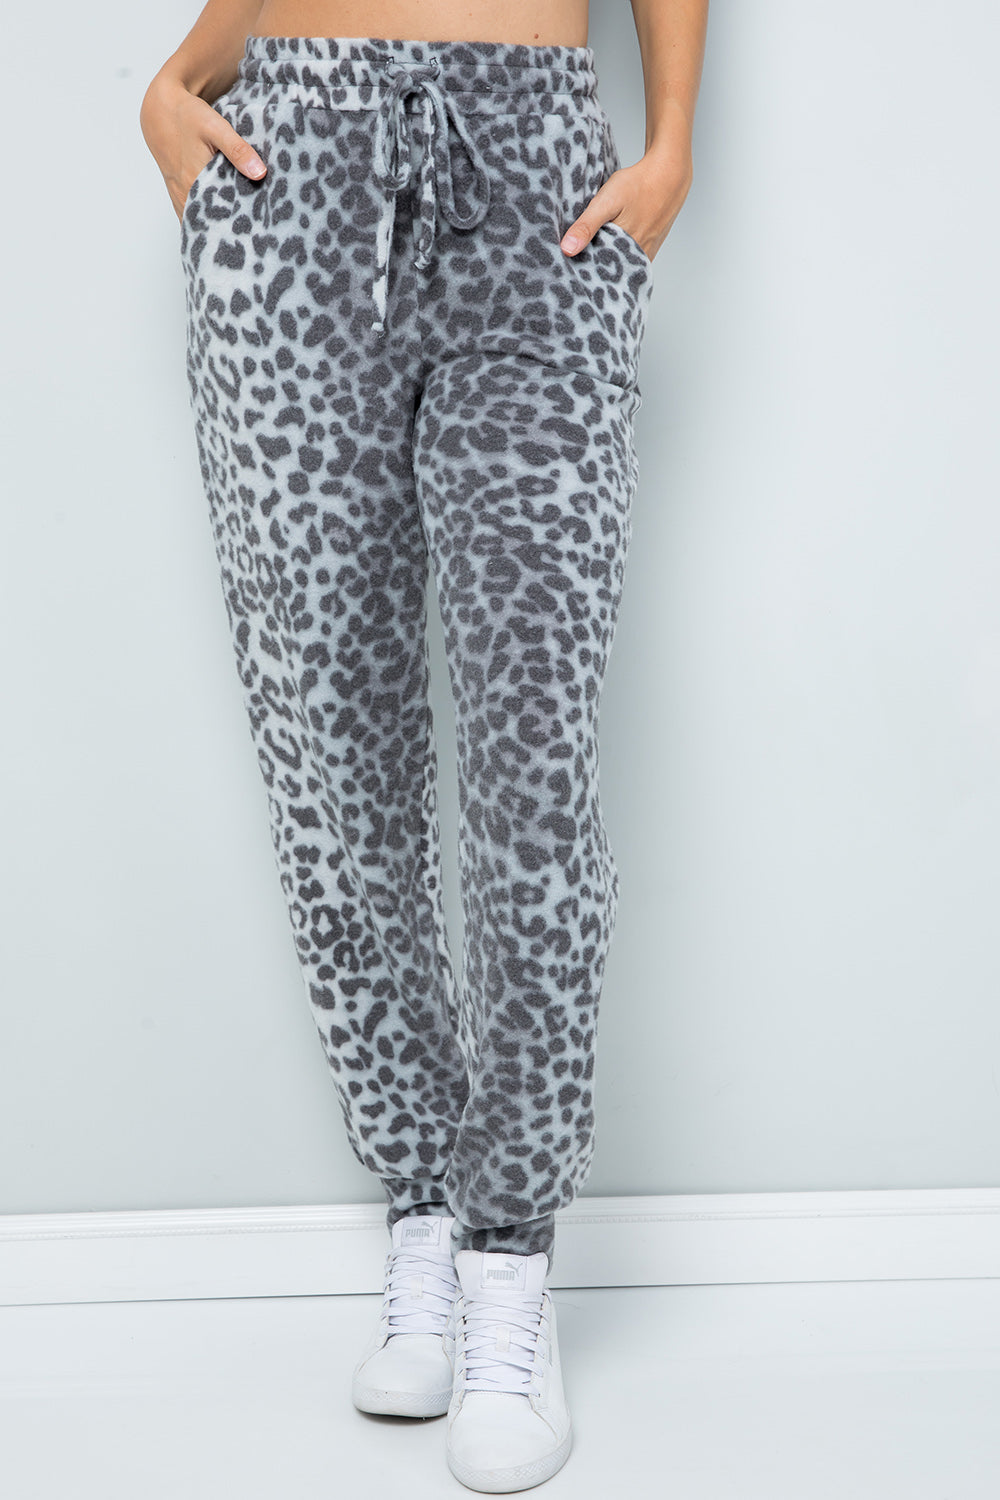 Leopard Print Loungewear Joggers